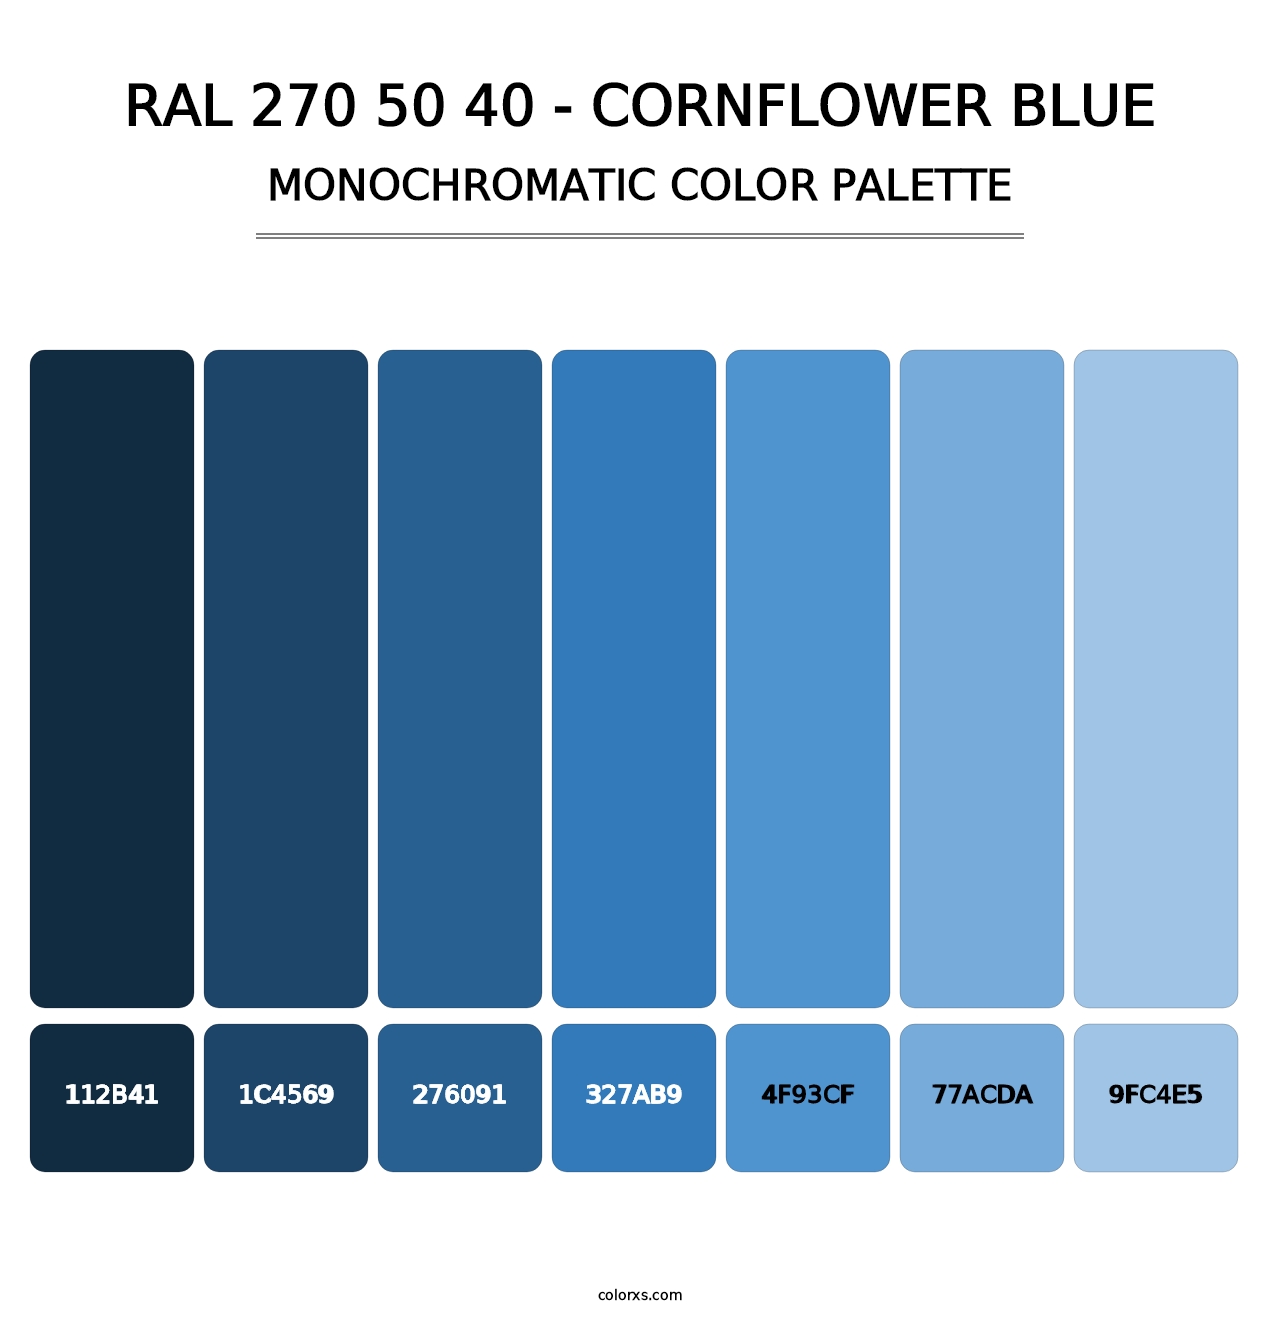 RAL 270 50 40 - Cornflower Blue - Monochromatic Color Palette